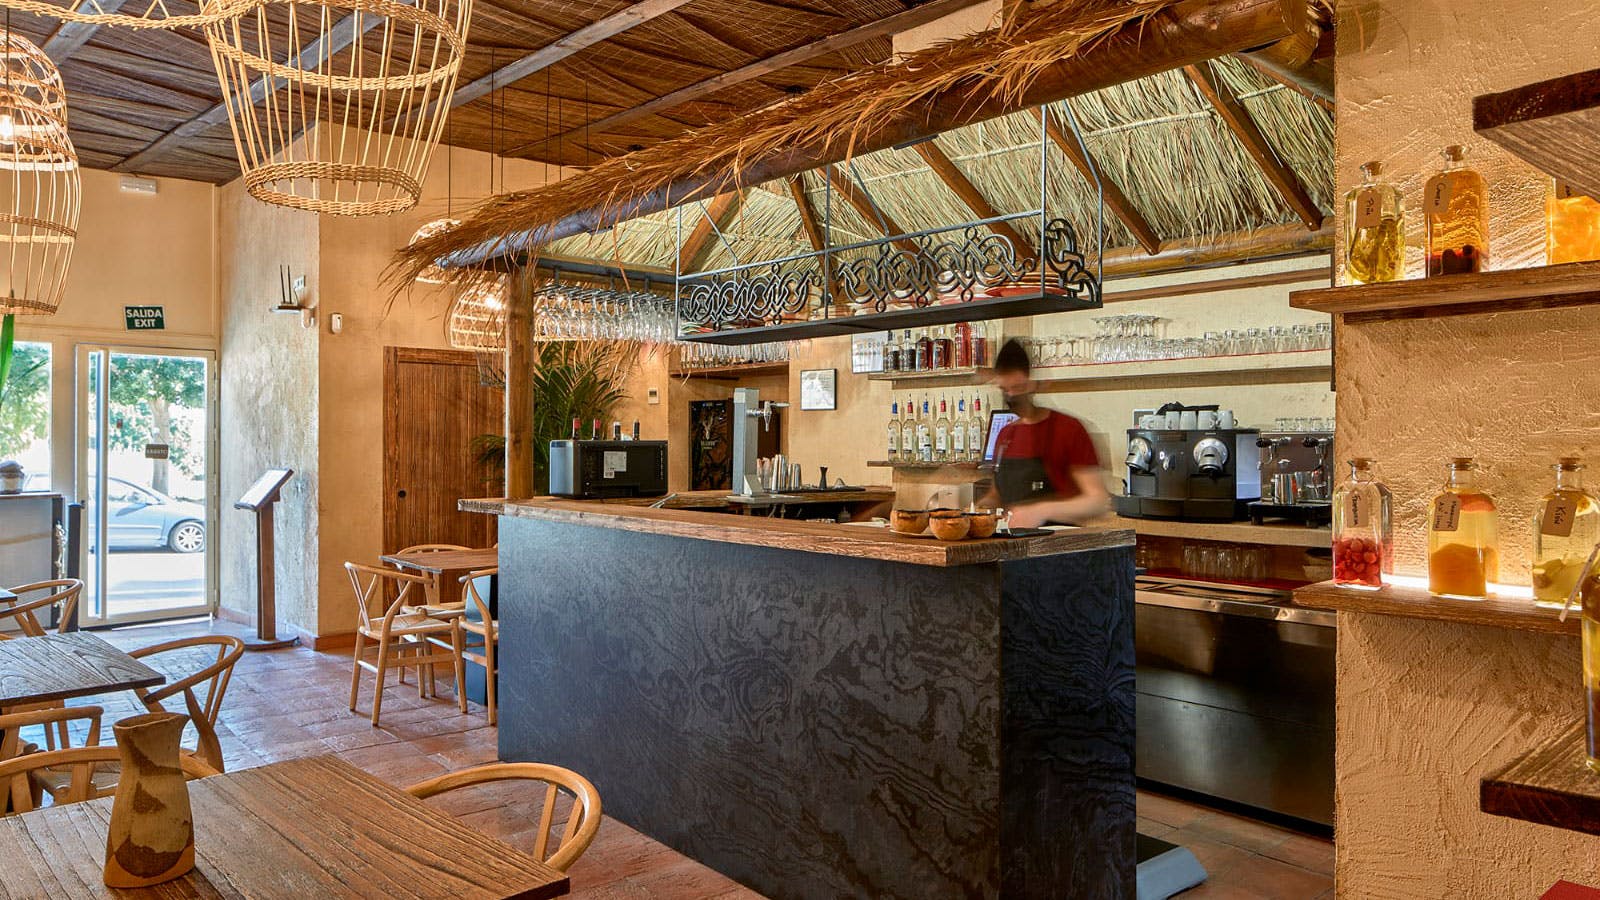 Imagem número 235 da actual secção de Restaurant Quipu - Página 2 de 3 da Cosentino Portugal